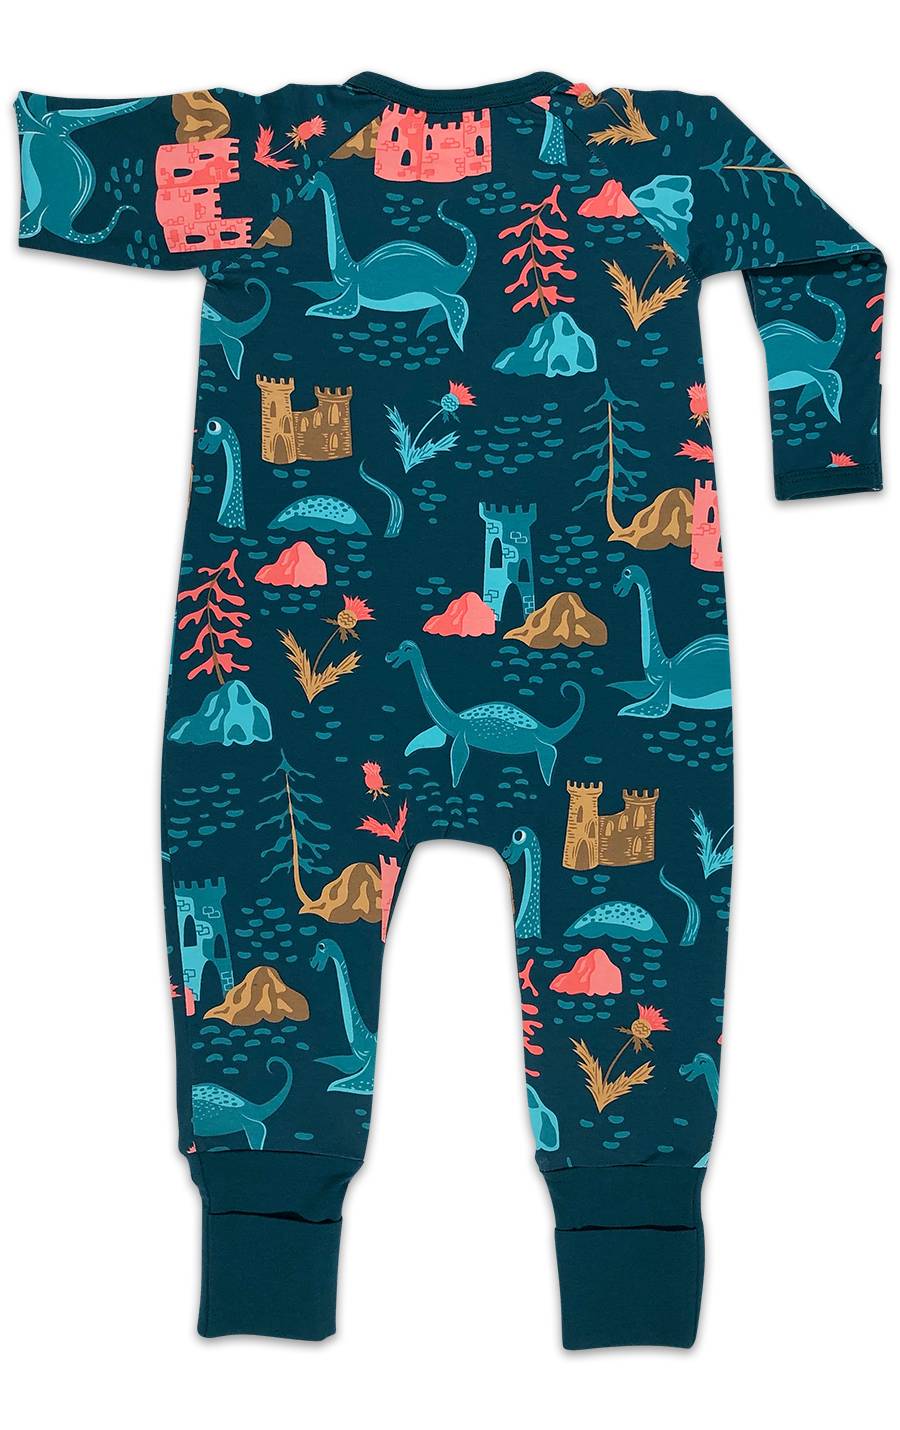 Sea Creature Baby Pajamas